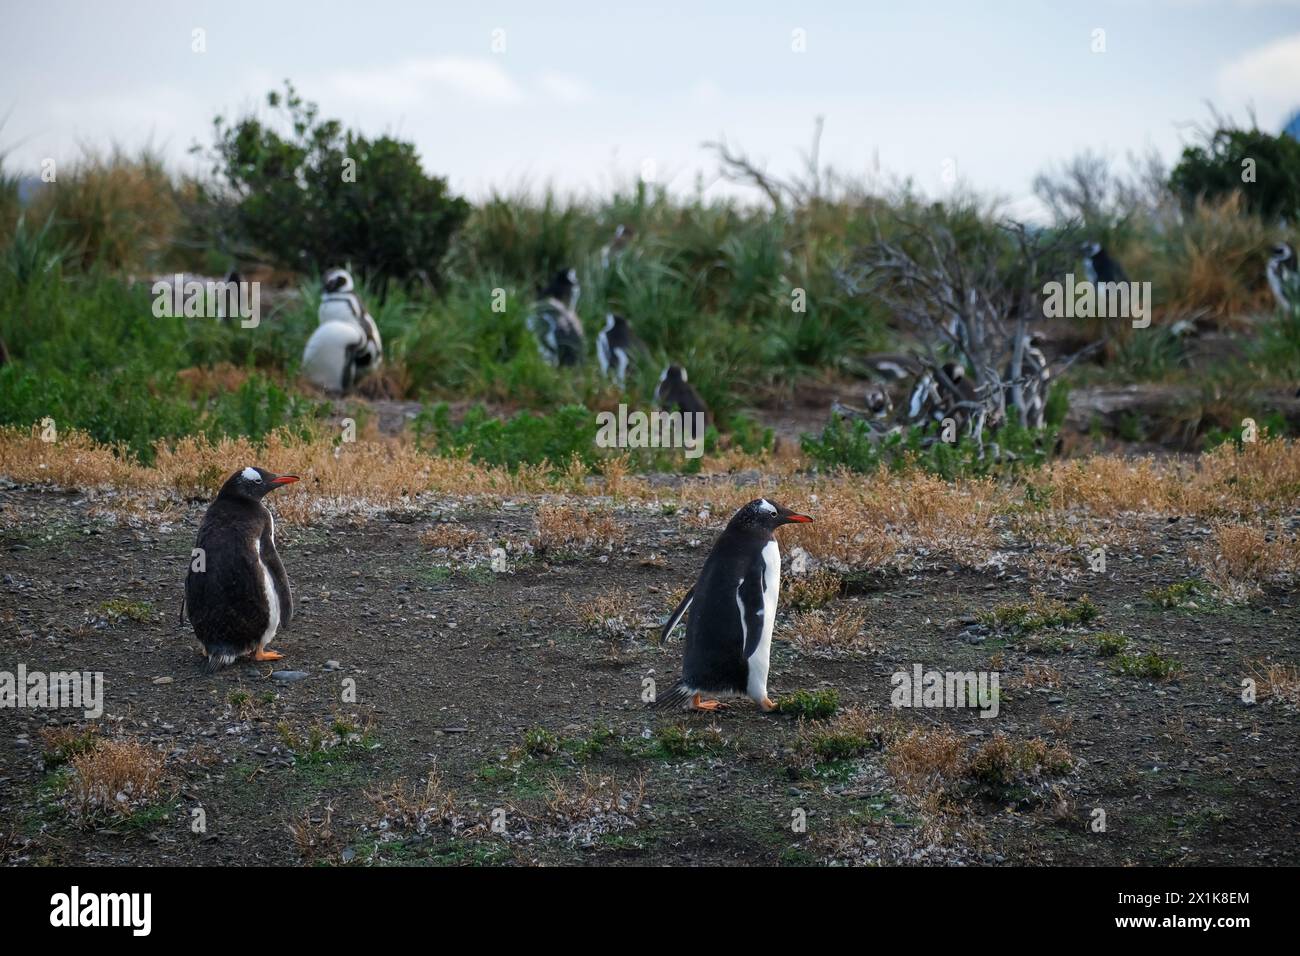 Ushuaia, Tierra del Fuego, Argentinien - Gentoo-Pinguine und Hinterpinguine auf der Isla Martillo im Beagle-Kanal ist der Beagle-Kanal ein na Stockfoto